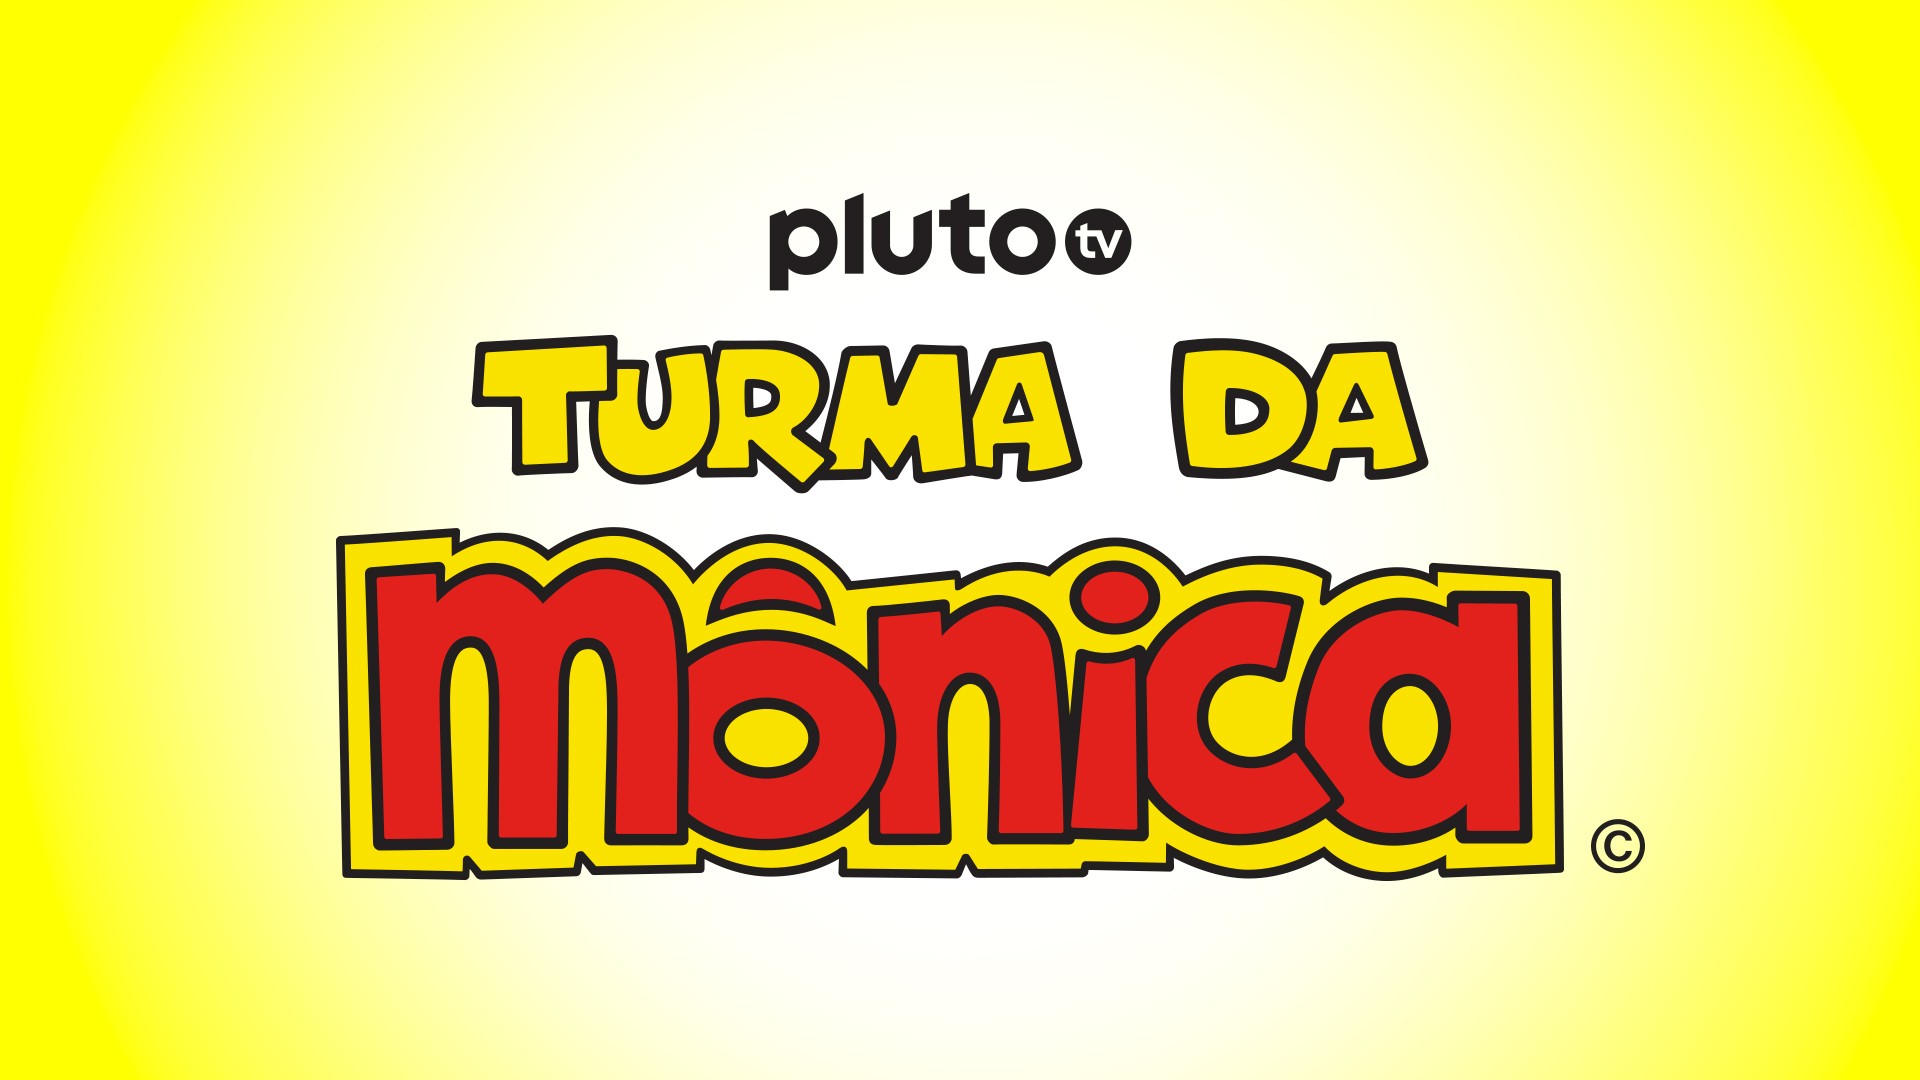 Pluto TV: 'Yu-Gi-Oh! Vrains' entra para os conteúdos On Demand nesta semana, Exclusivo